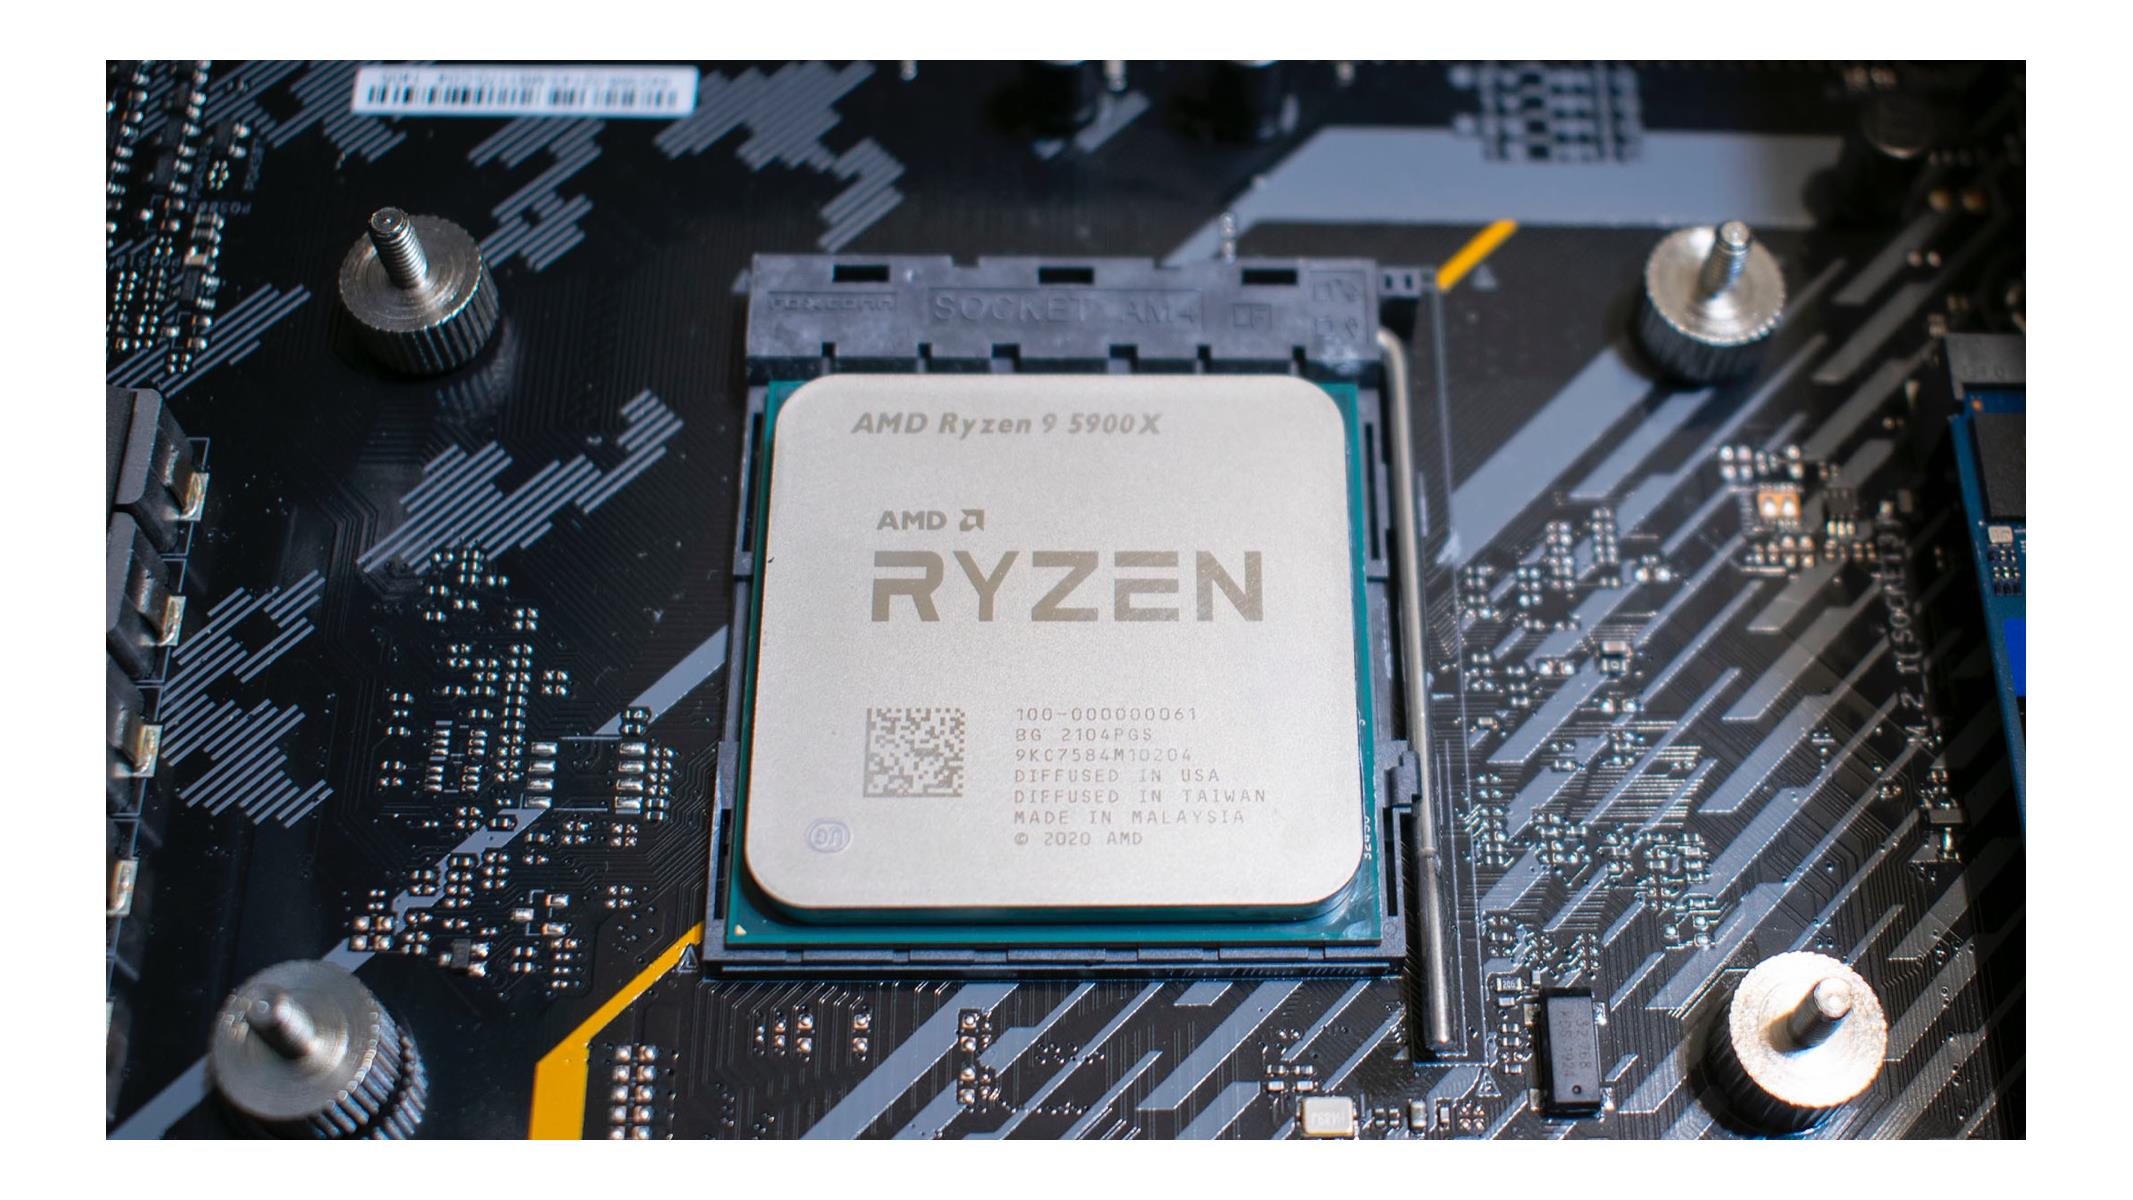 Amd ryzen 9 5900x oem. Ryzen 5900x. Ryzen 9 5900. AMD Ryzen 9 5900x 12-Core Processor. AMD 5900x.